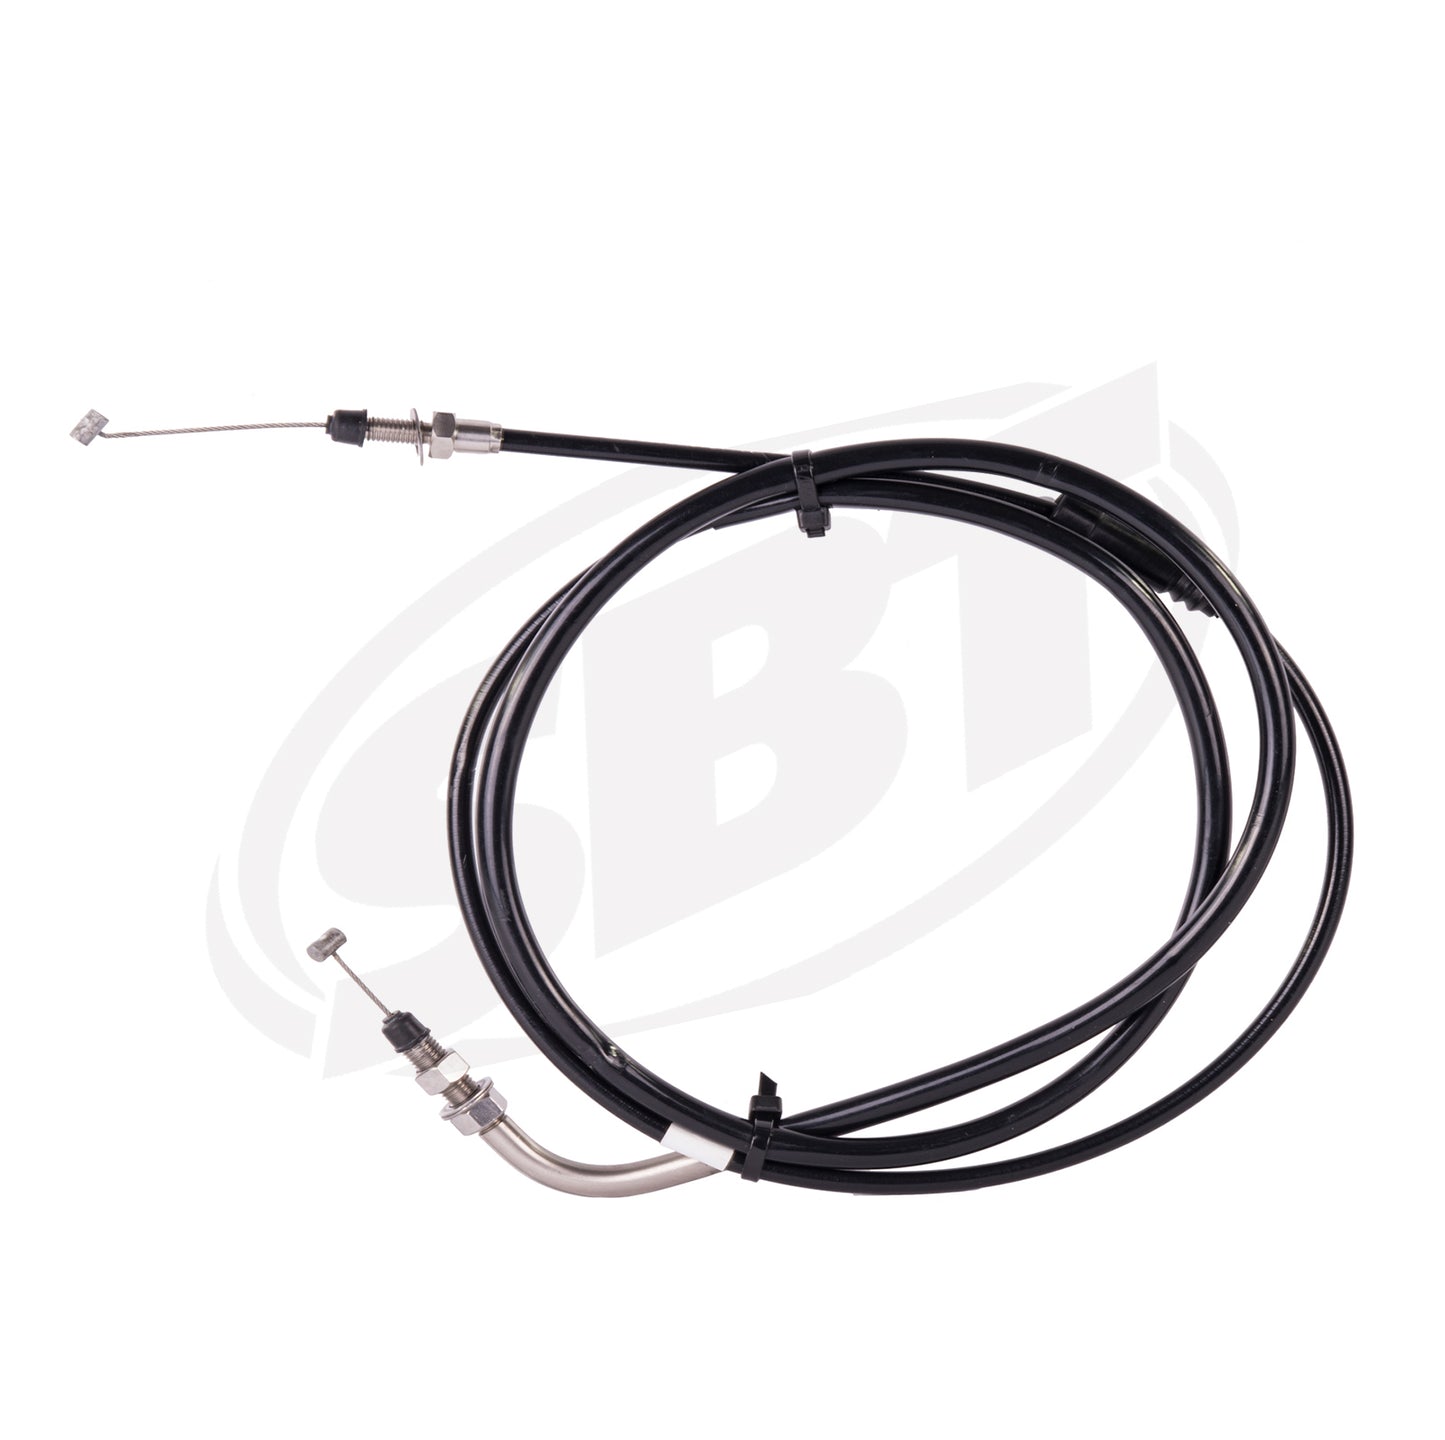 SBT Kawasaki Throttle Cable 1100 STX 54012-3750 1997 ( PRE ORDER )